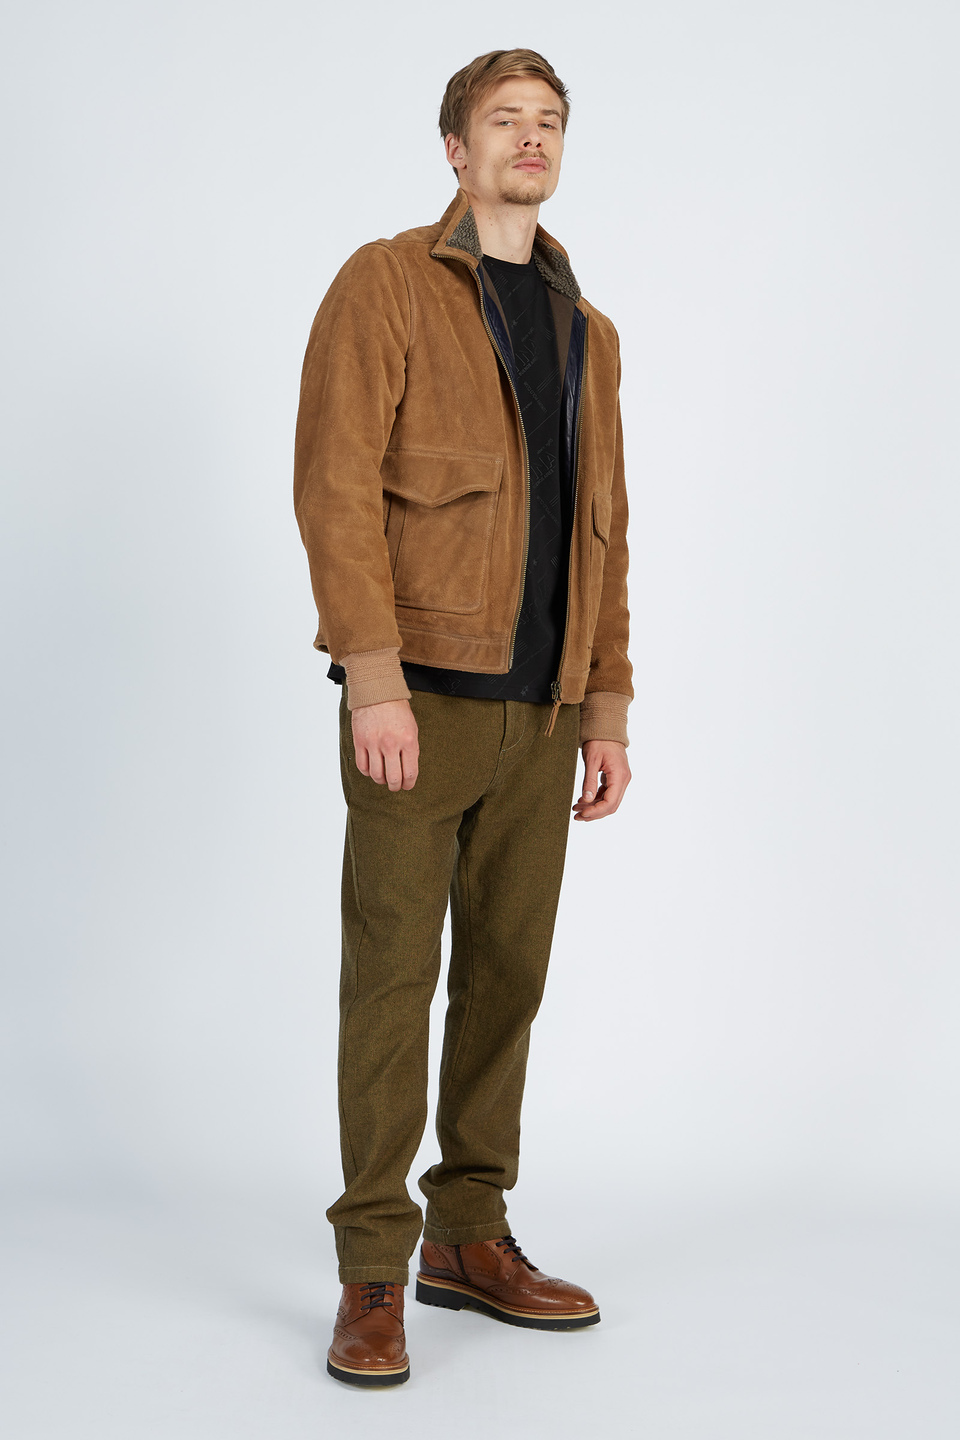 Veste en cuir pour homme avec fermeture éclair à l’avant | La Martina - Official Online Shop